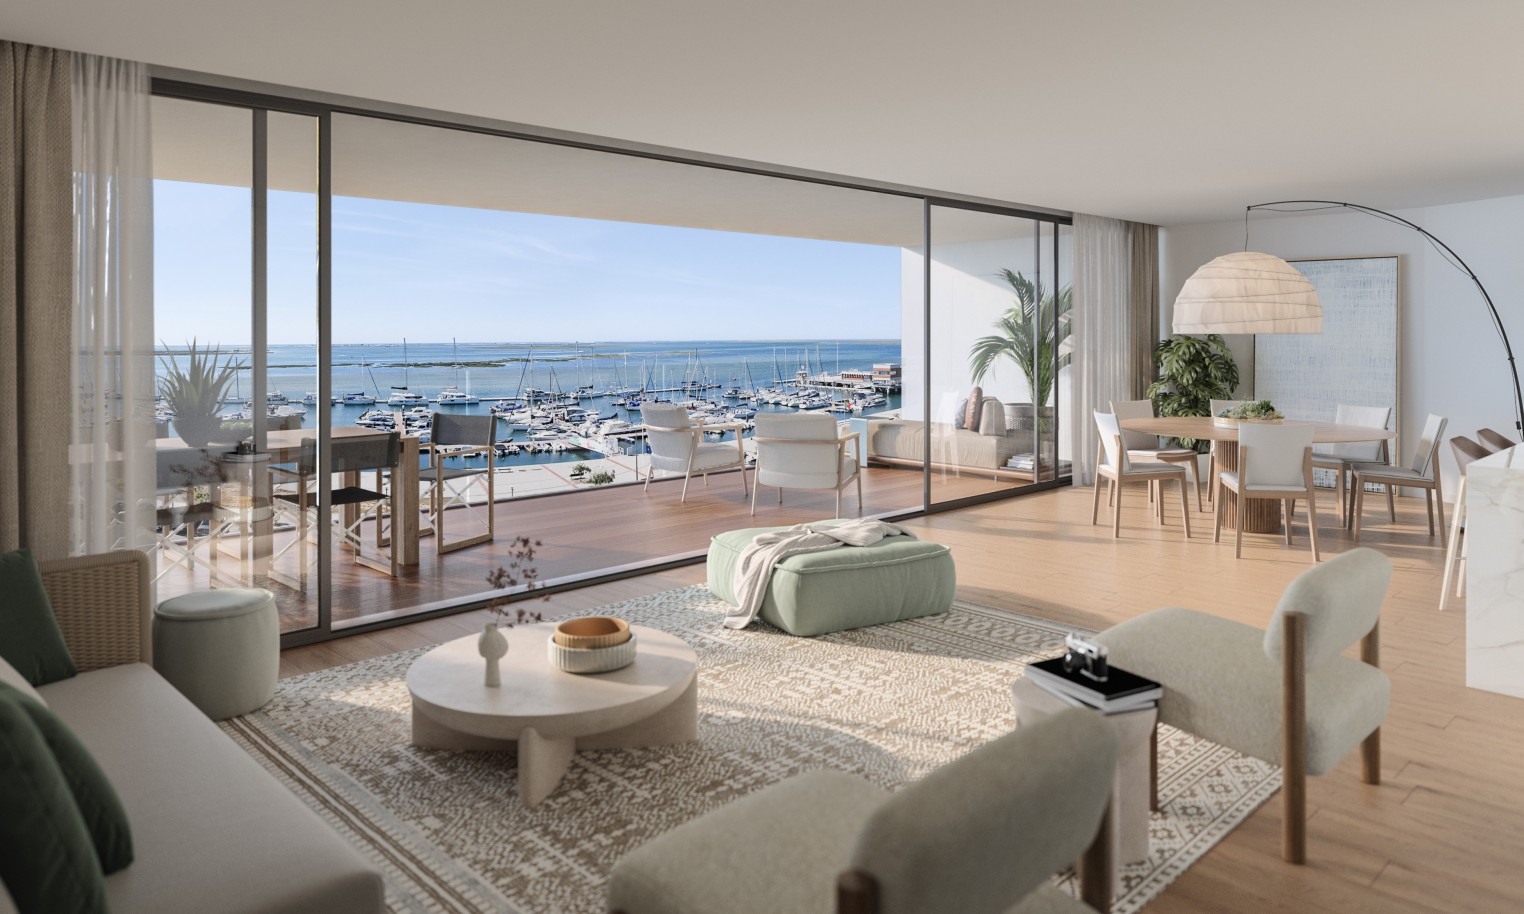 Appartements neufs avec vue sur mer, 1, 2 & 3 chambres, à vendre à Olhão, Algarve_244576